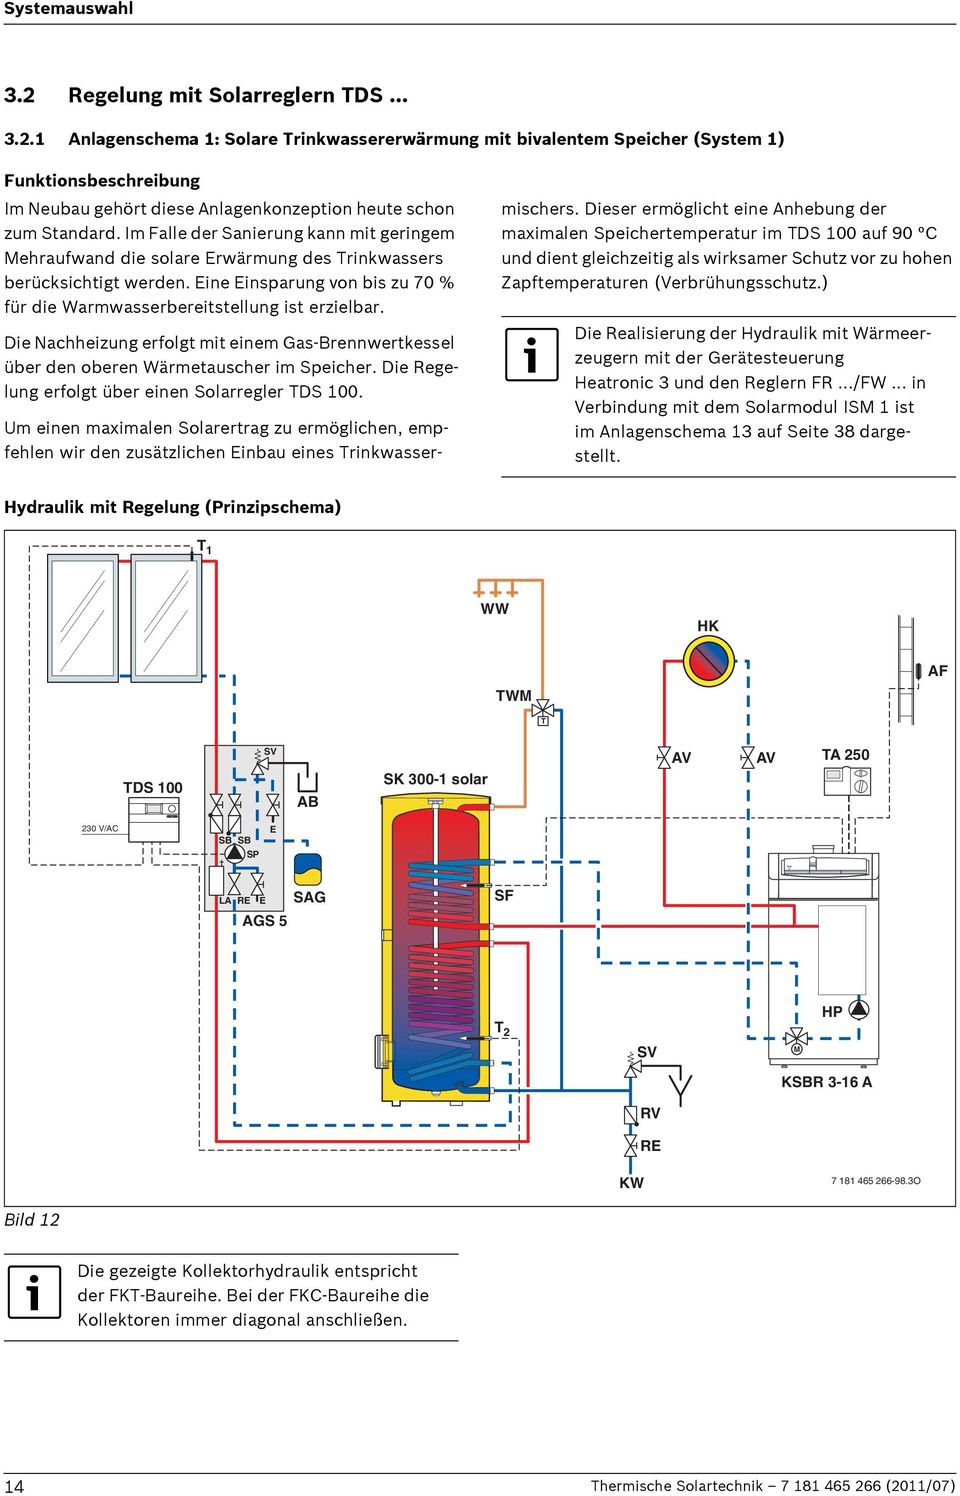 Die Nachheizung erfolgt mit einem Gas-Brennwertkessel über den oberen Wärmetauscher im Speicher. Die Regelung erfolgt über einen Solarregler TDS 100.